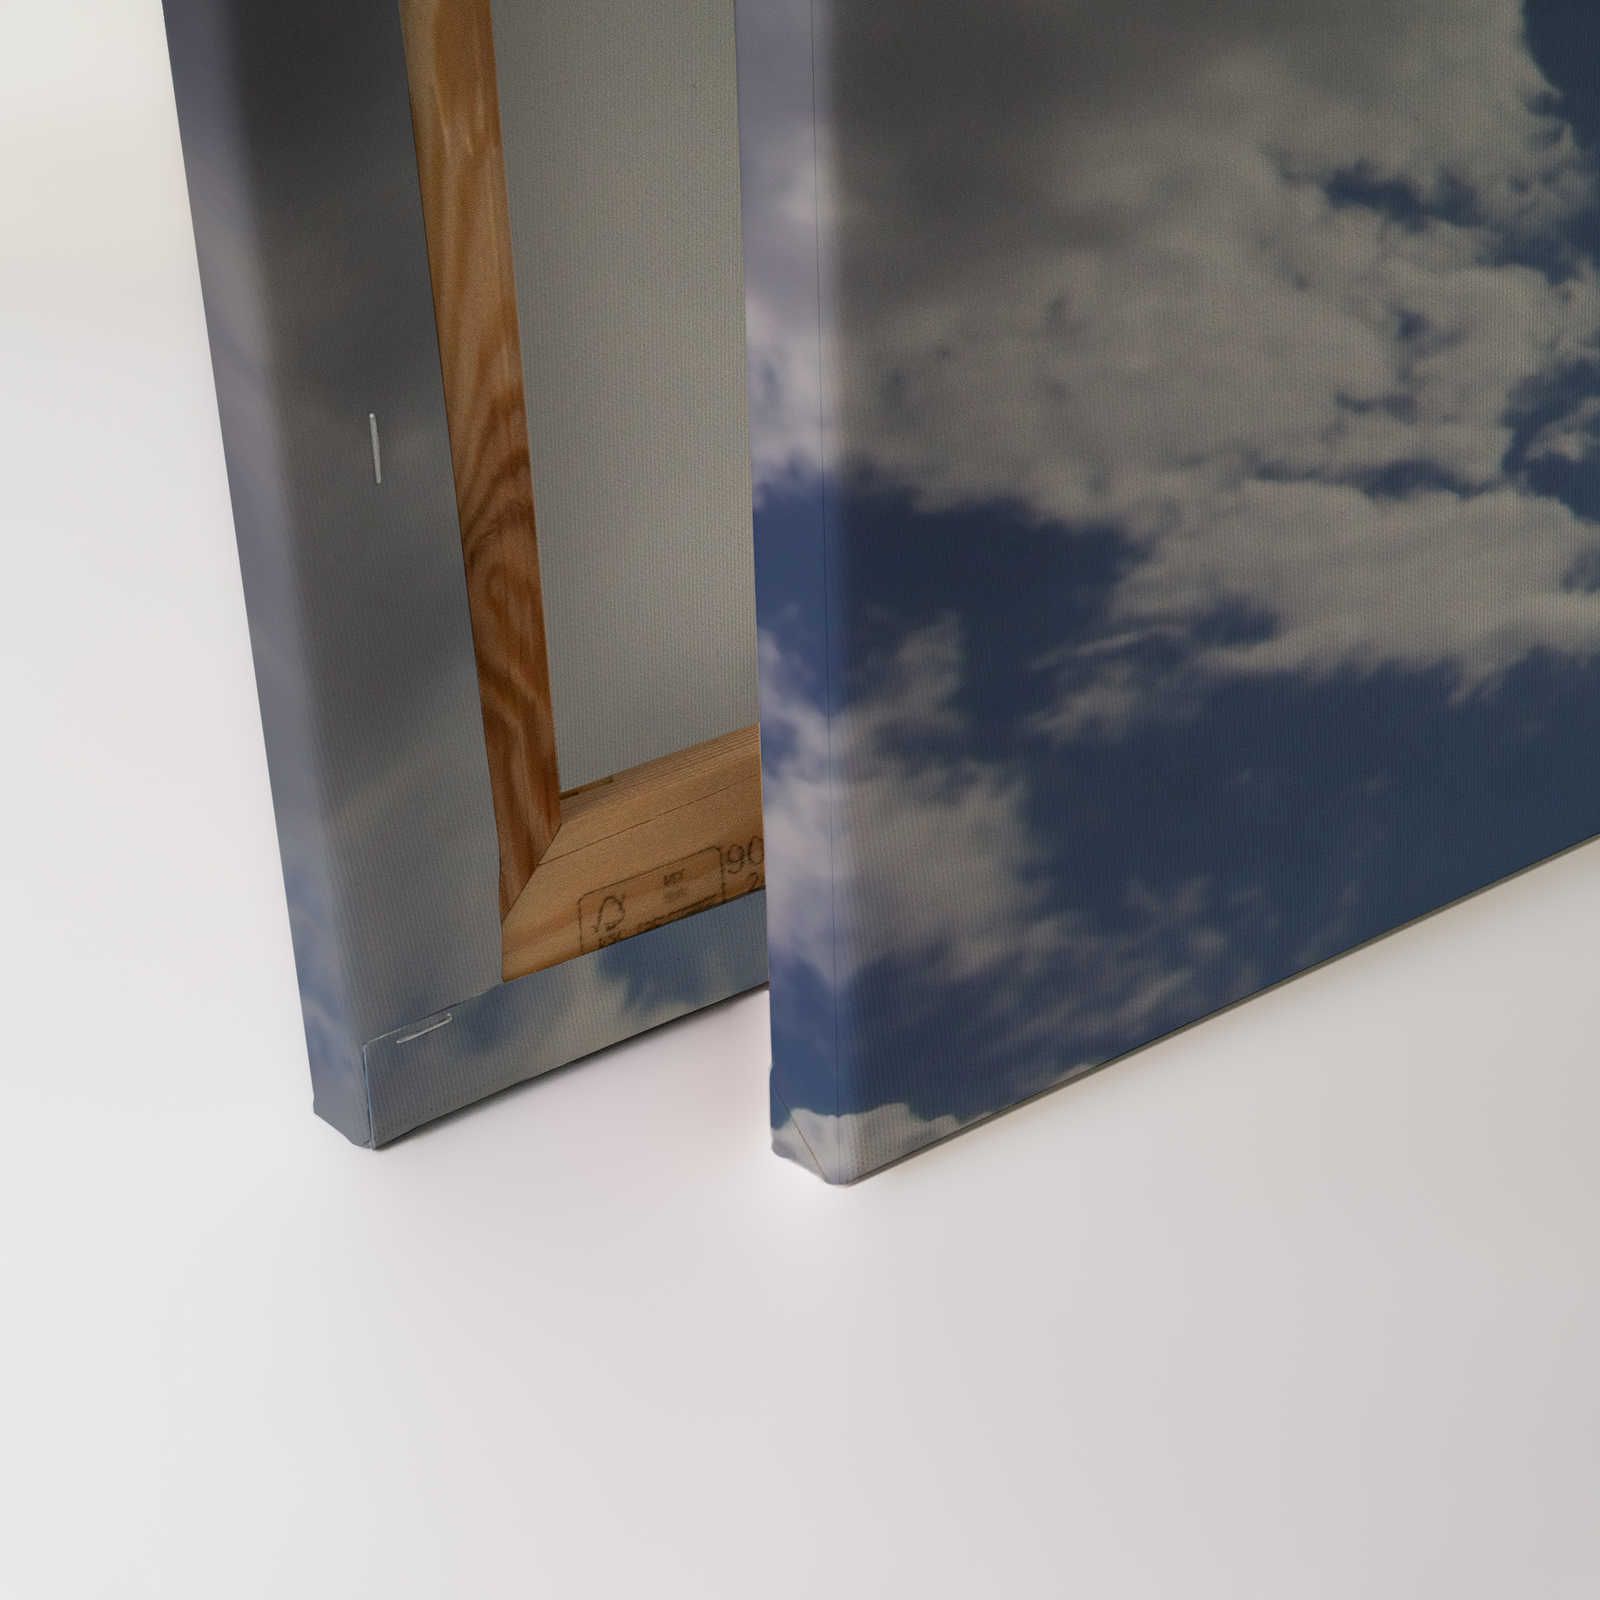             Ciel bleu - Tableau toile soleil & ciel nuageux bleu - 1,20 m x 0,80 m
        